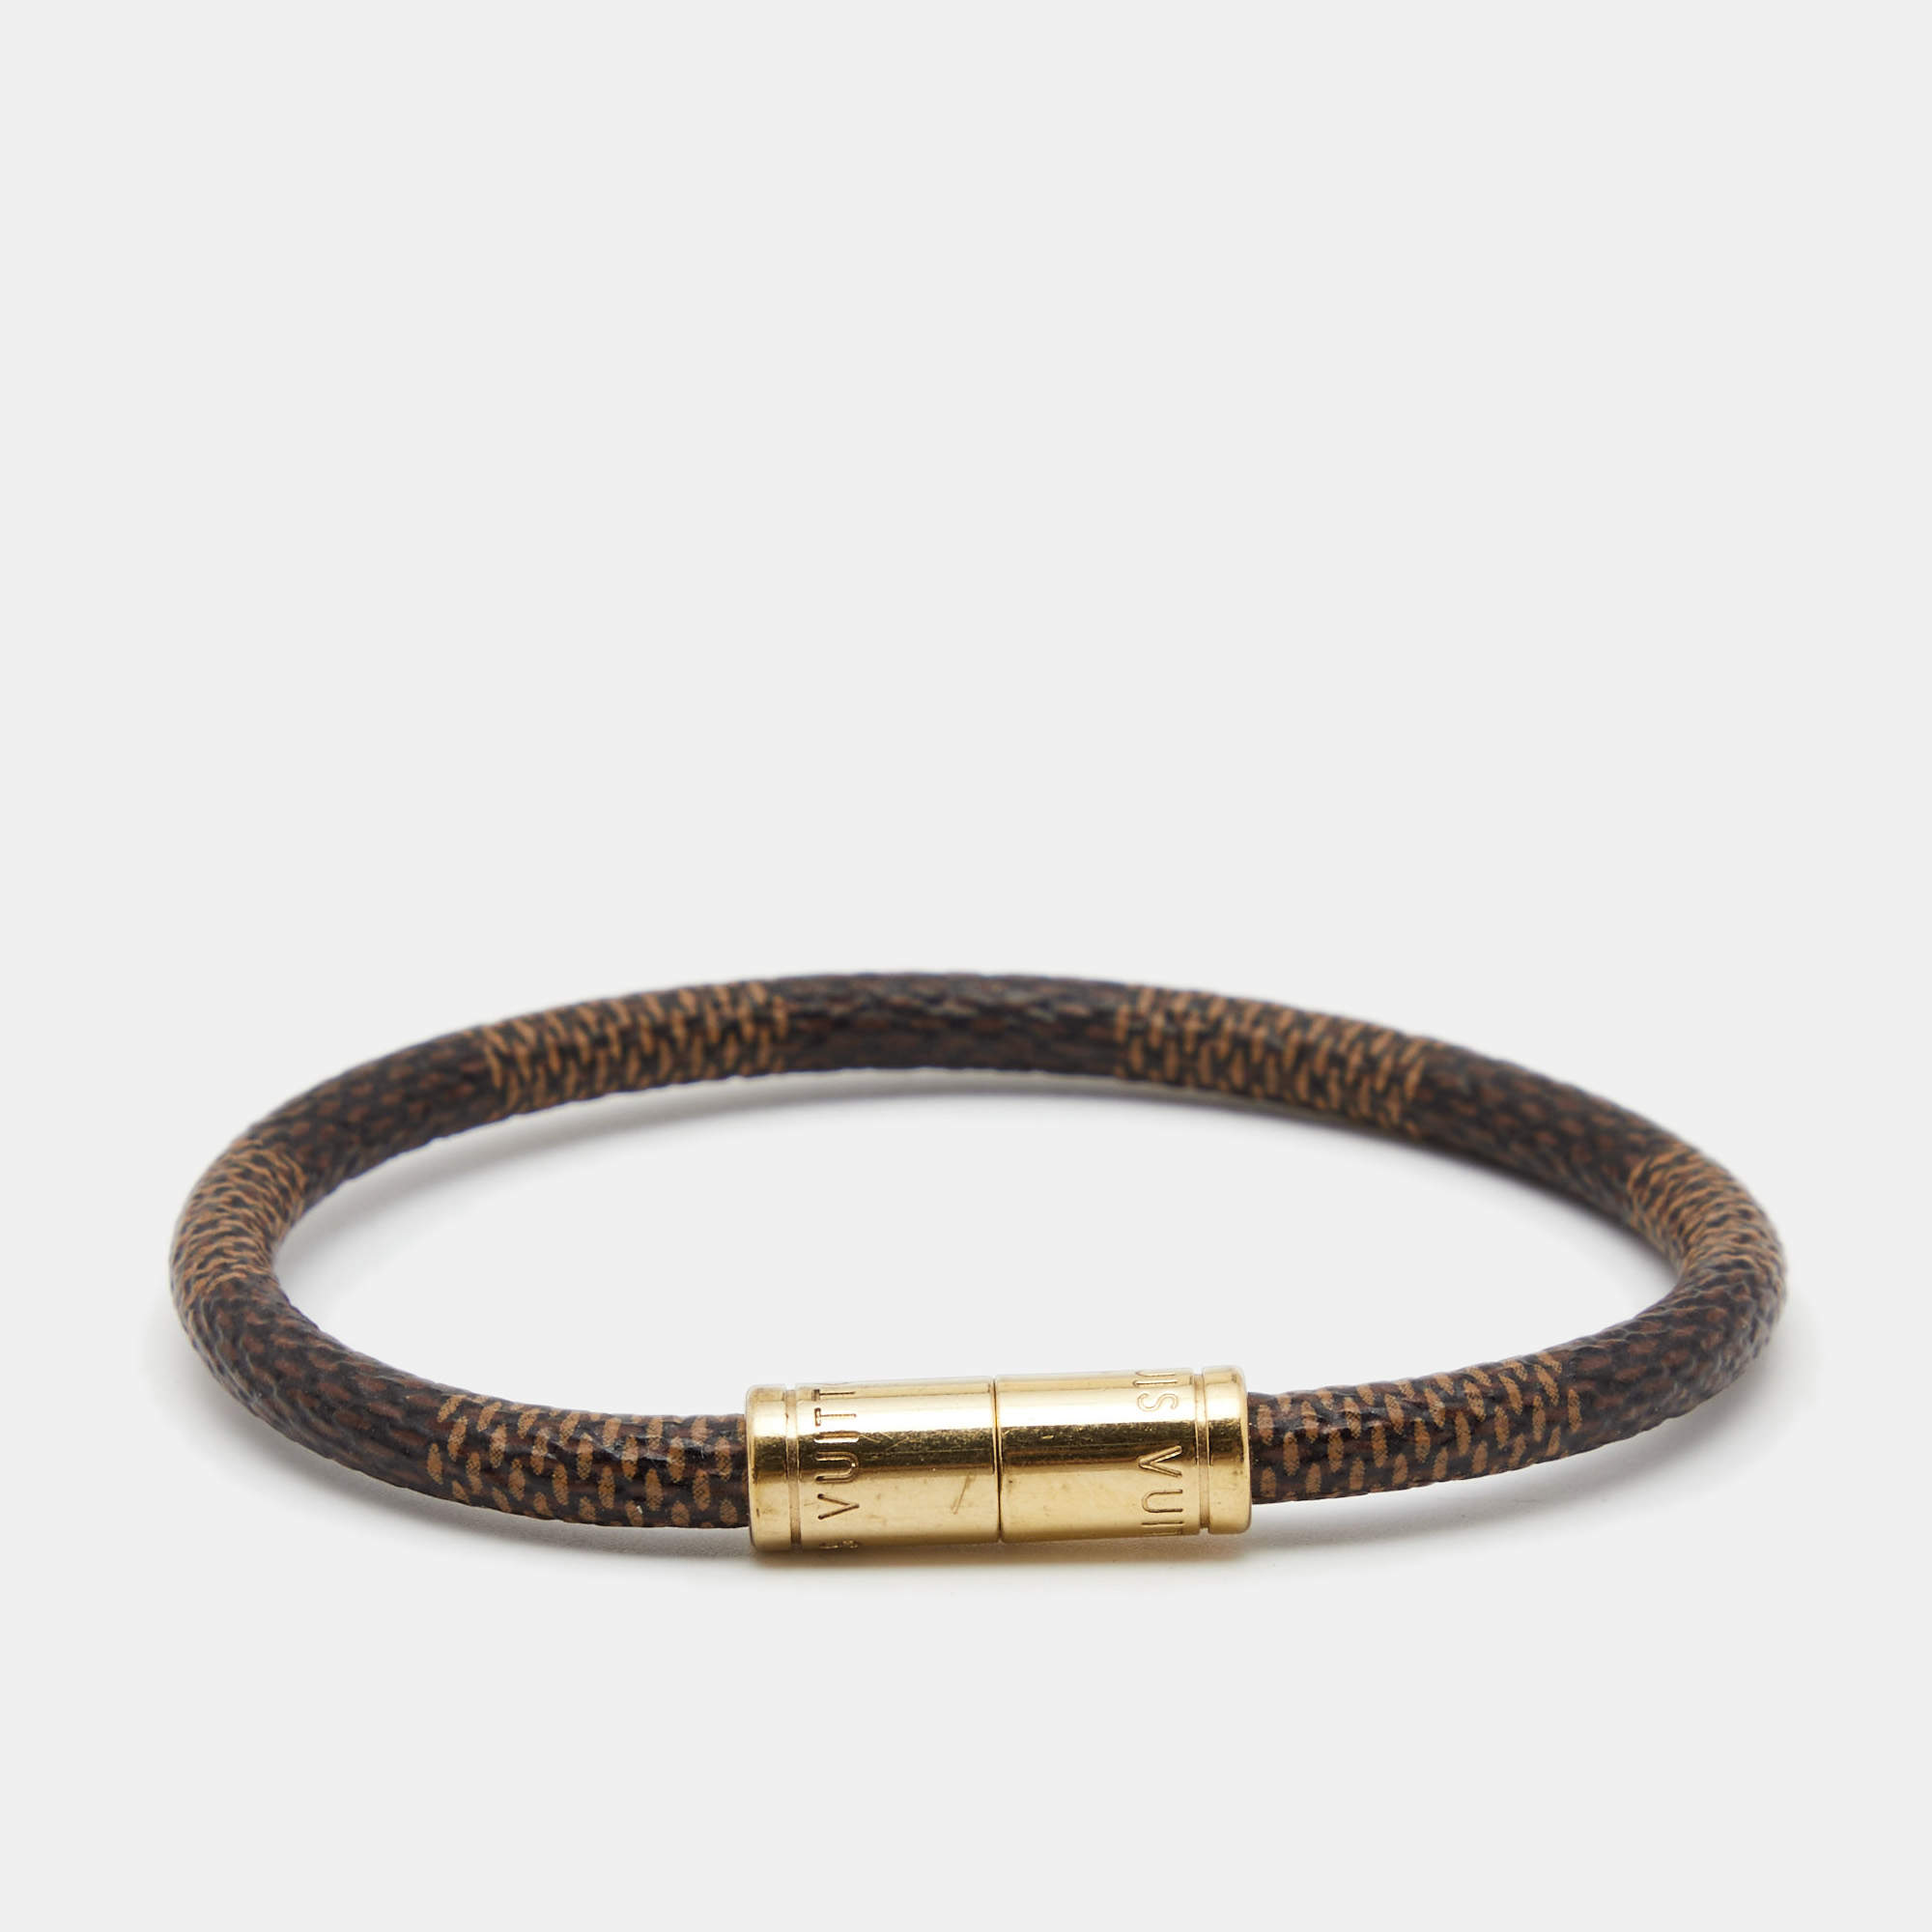 Authentic Louis Vuitton Keep It Damier Ebene Bracelet 